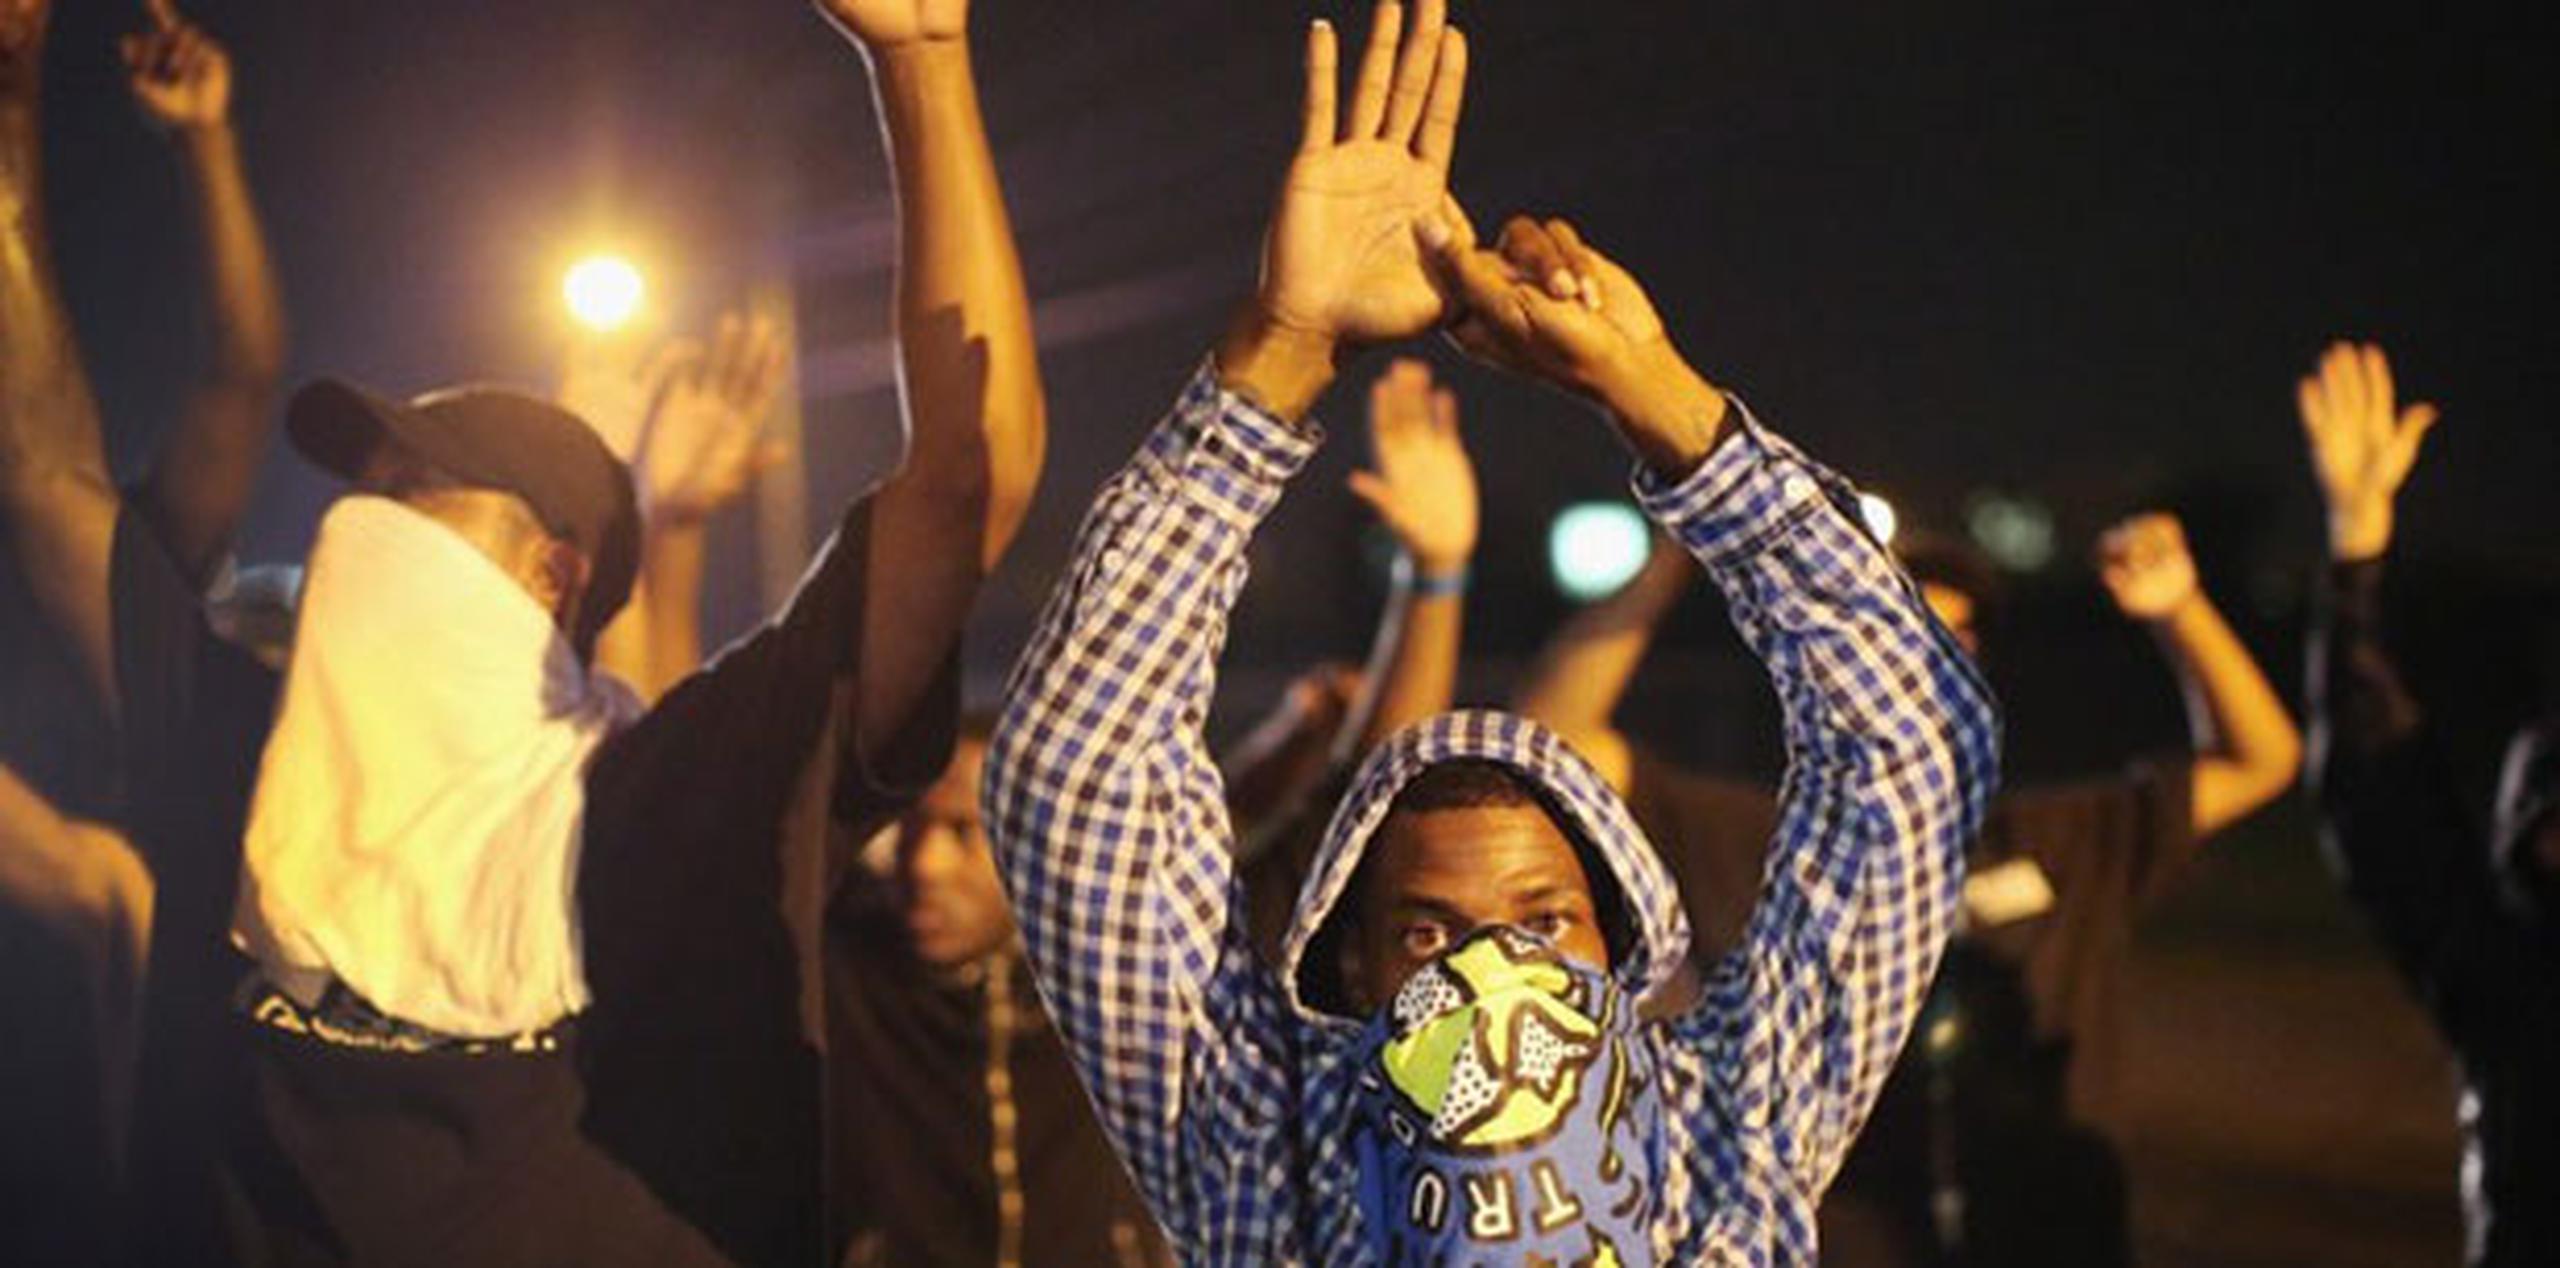 La tensión en Ferguson se acrecentó ayer por la noche, luego de que la policía diera a conocer el nombre del policía responsable de la muerte de Michael Brown, de 18 años. (AFP)